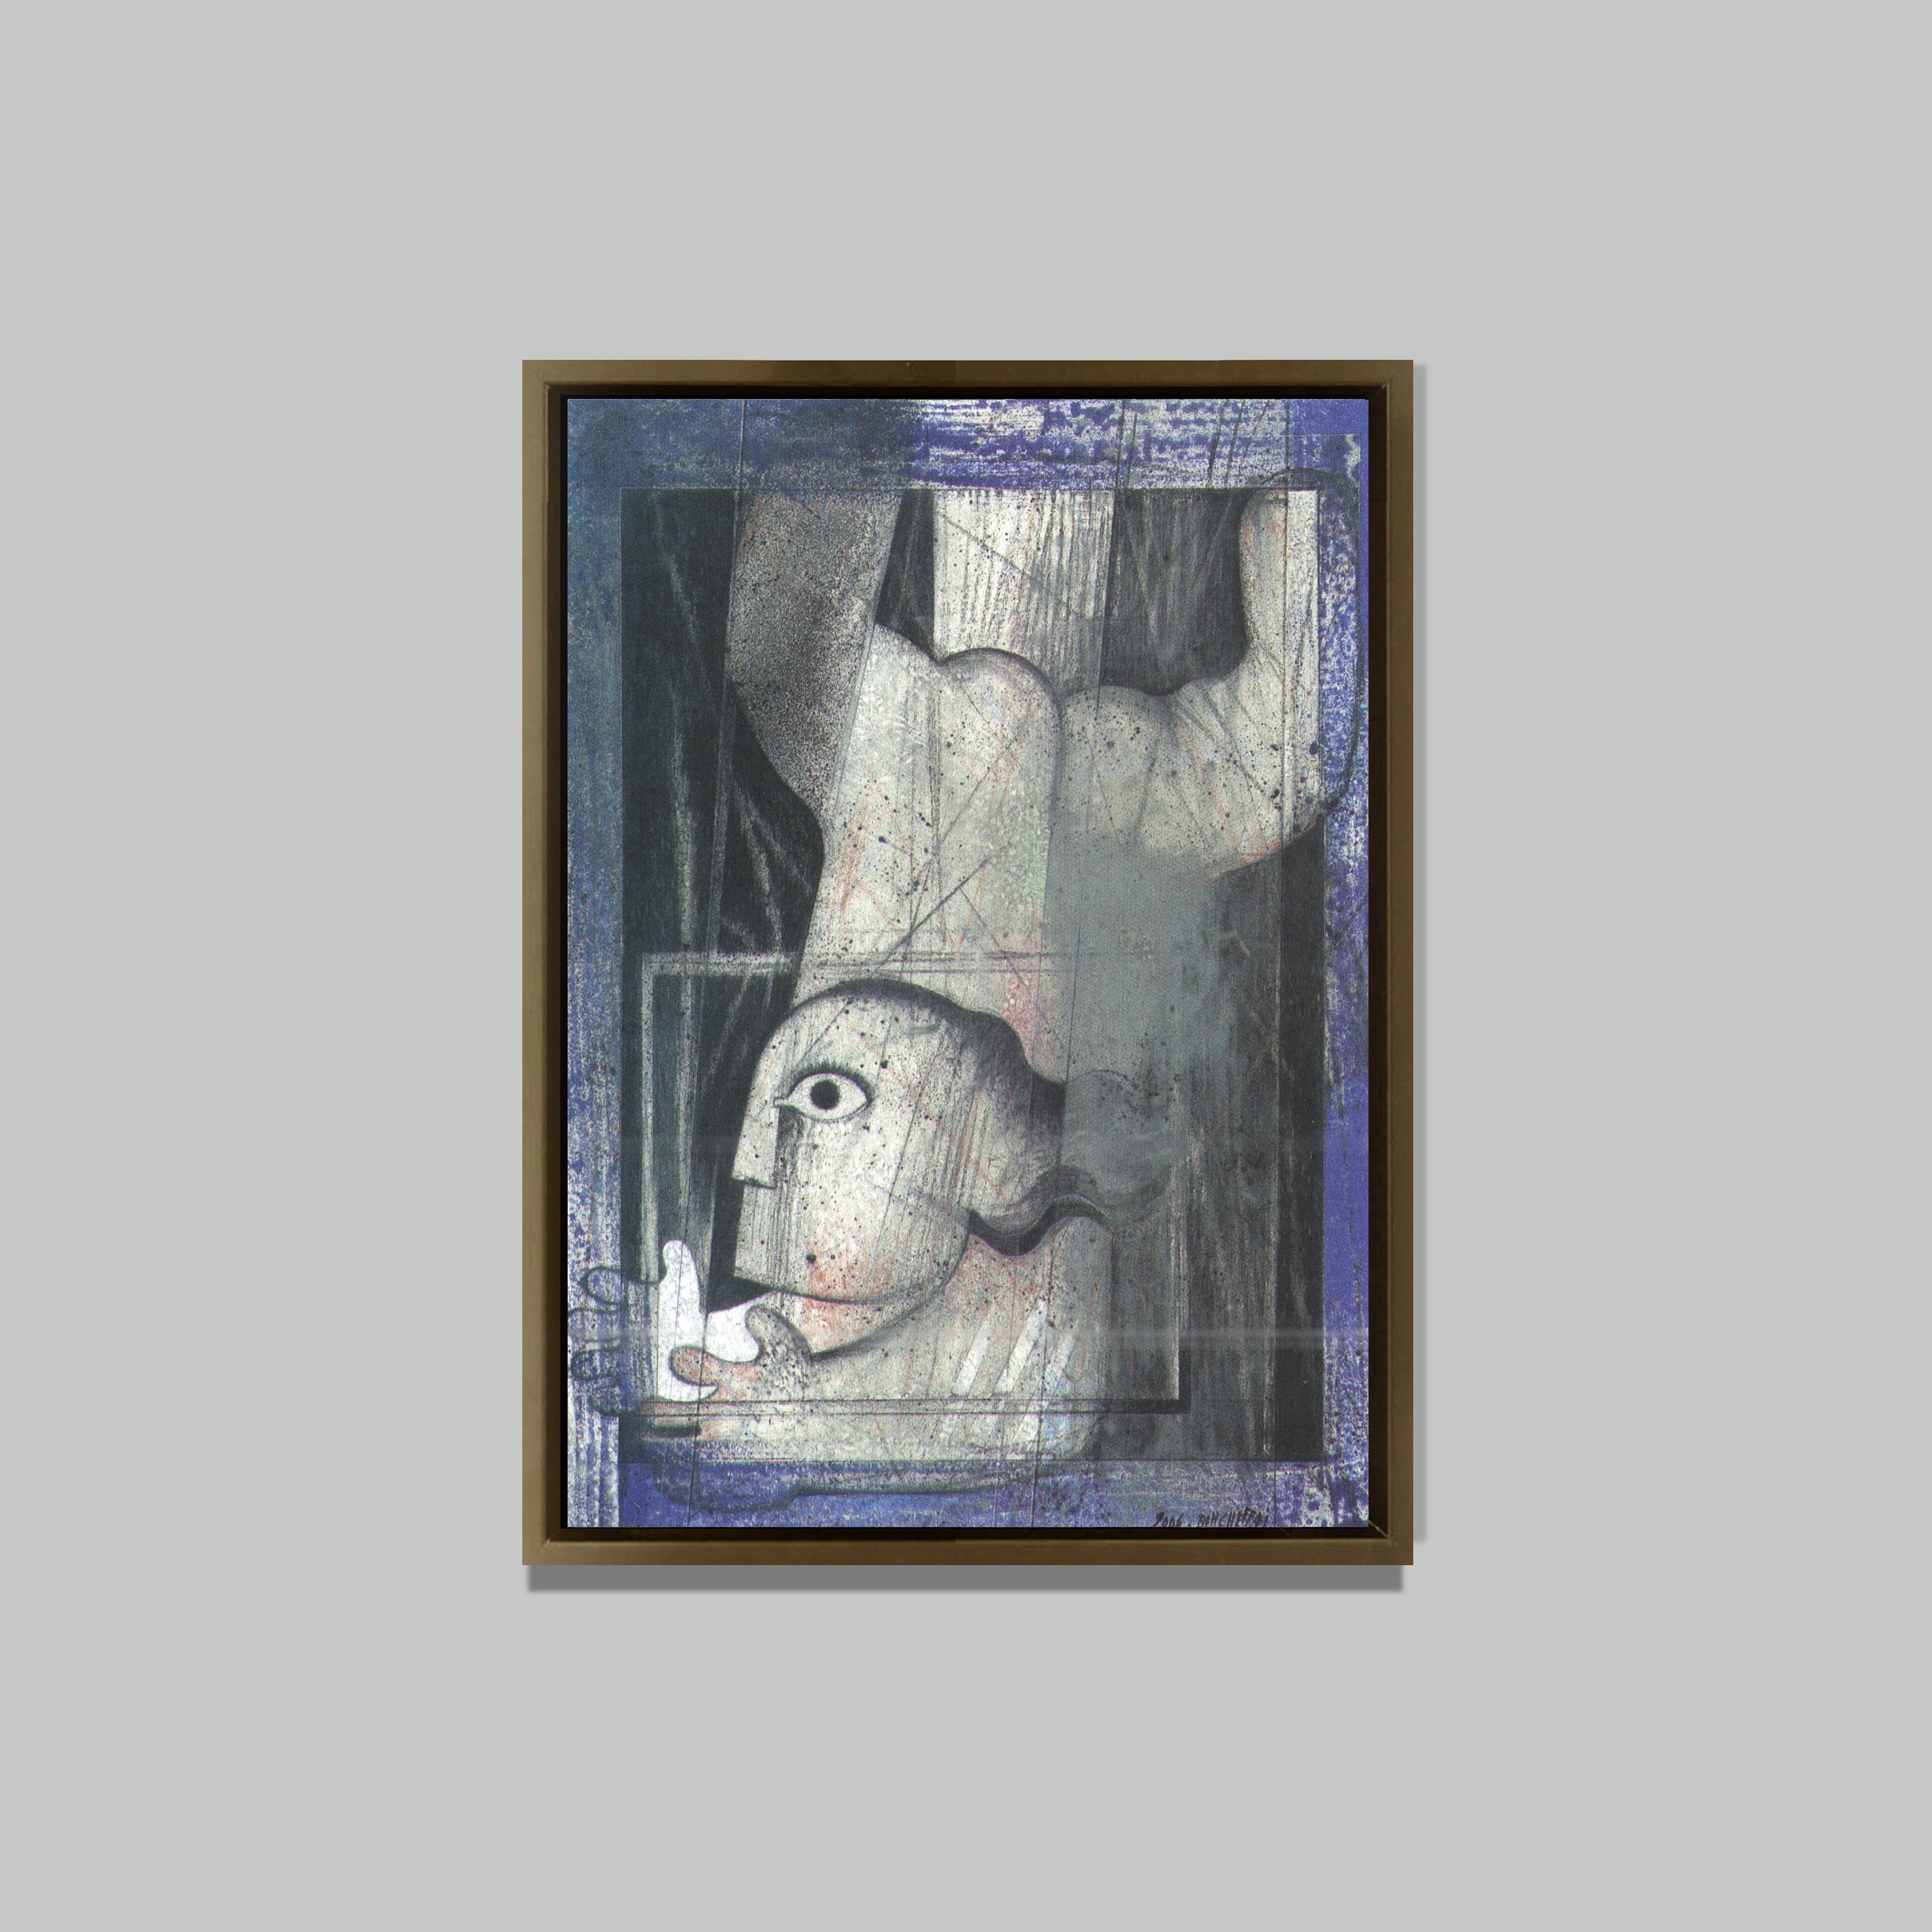 A bras ouverts, 2006
huile sur toile 
95 x 68 cm